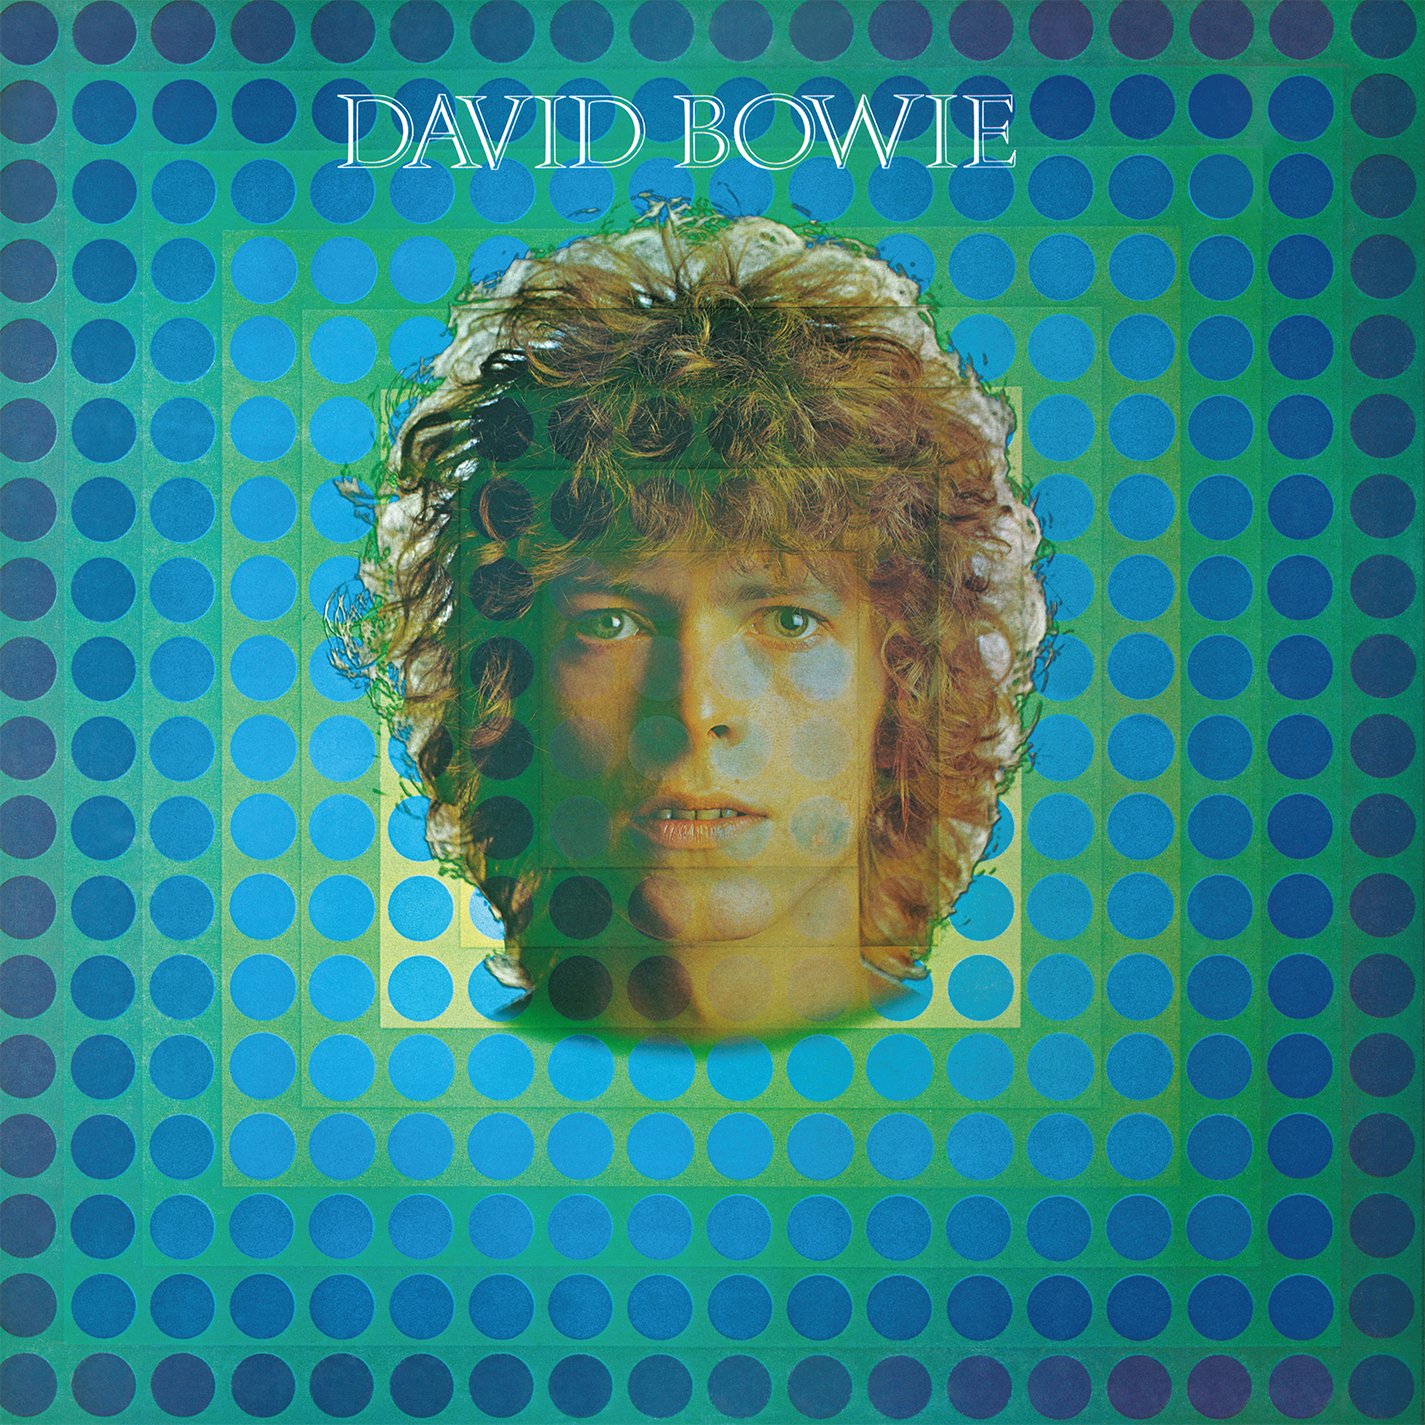 David Bowie – David Bowie AKA Space Oddity (180g)